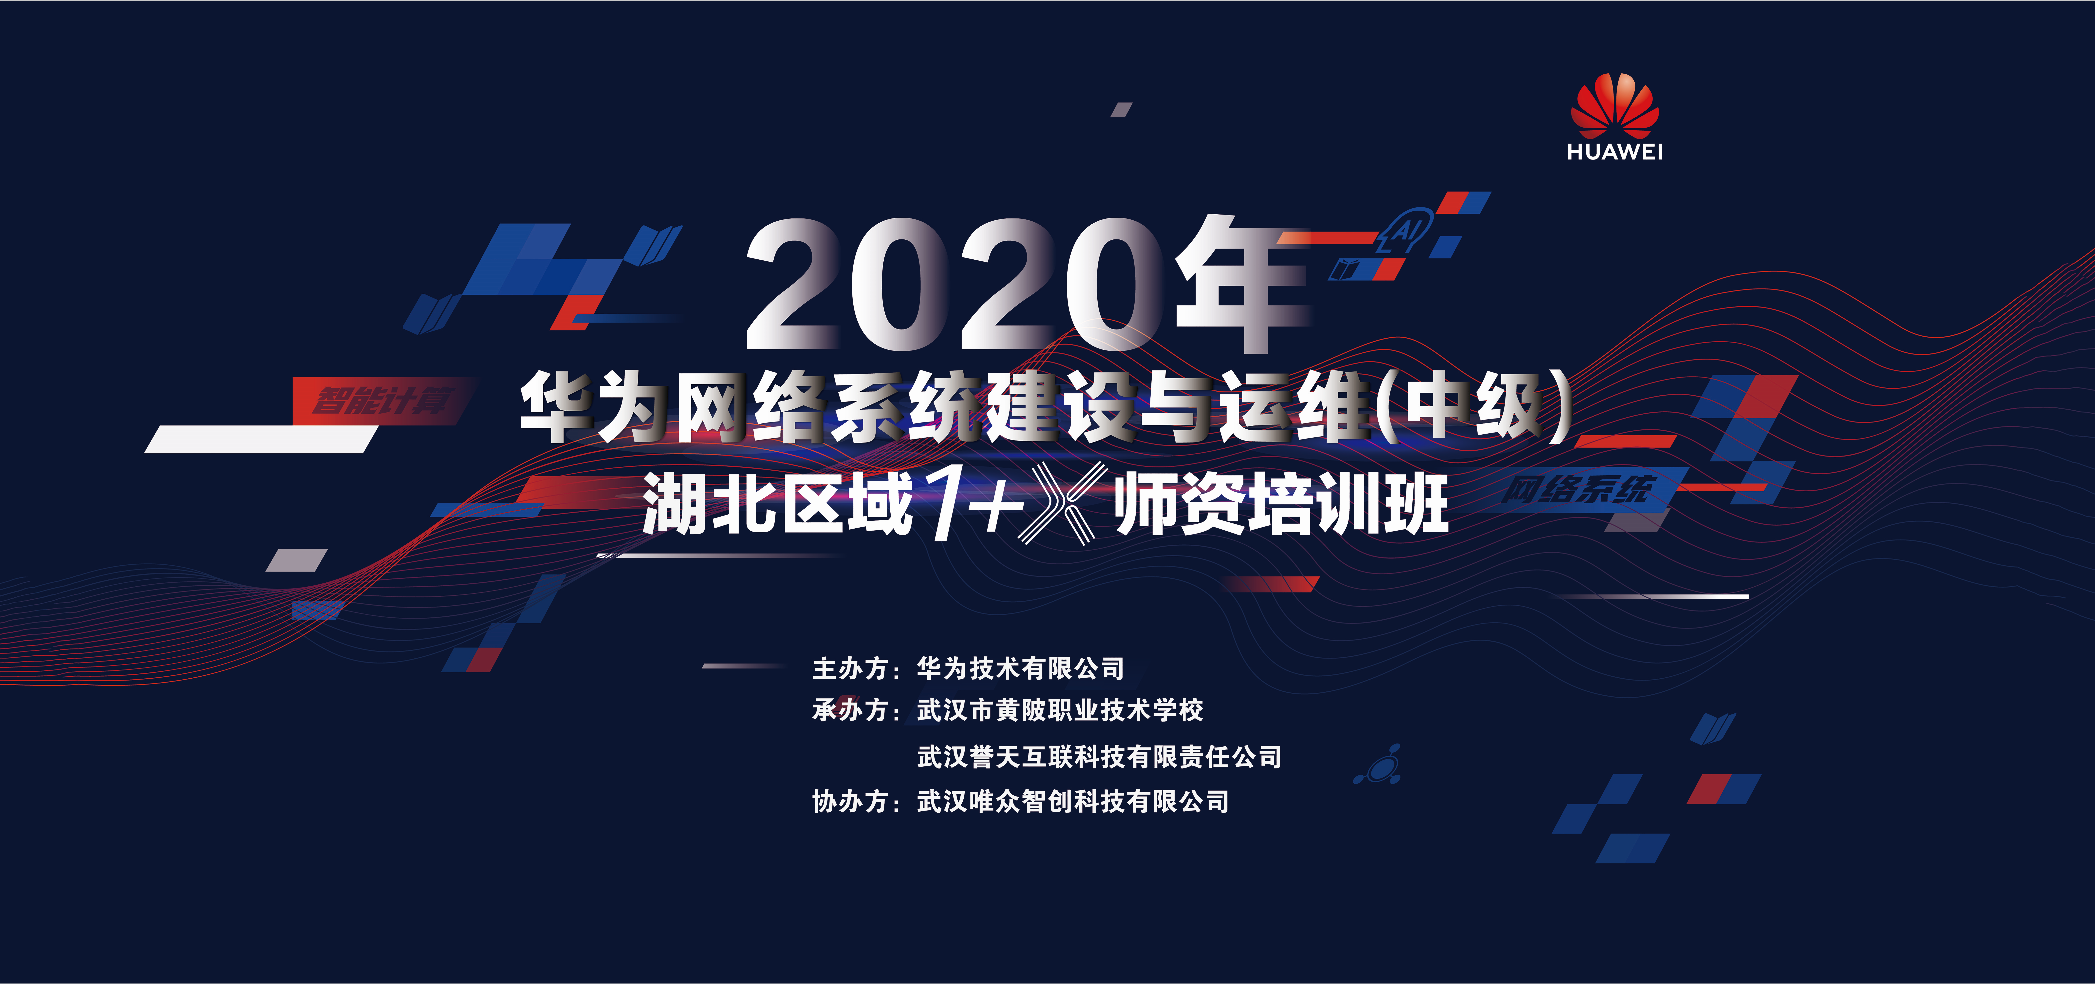 2020年华为1+X 网络系统建设与运维湖北师资培训班开班